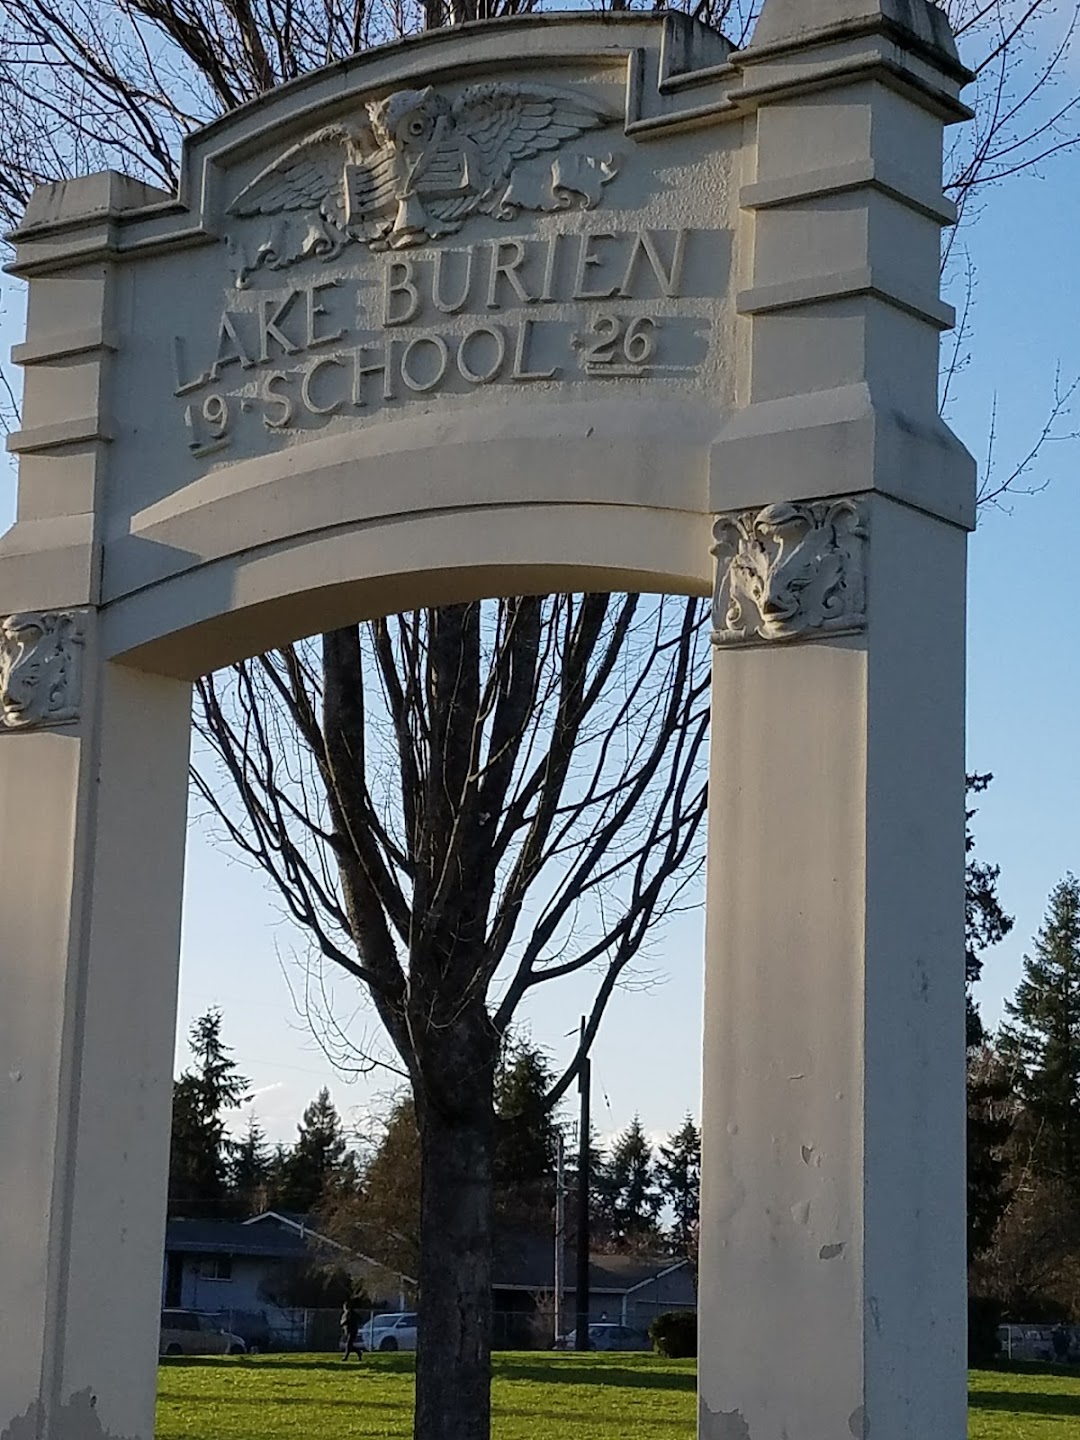 Lake Burien School Memorial Park